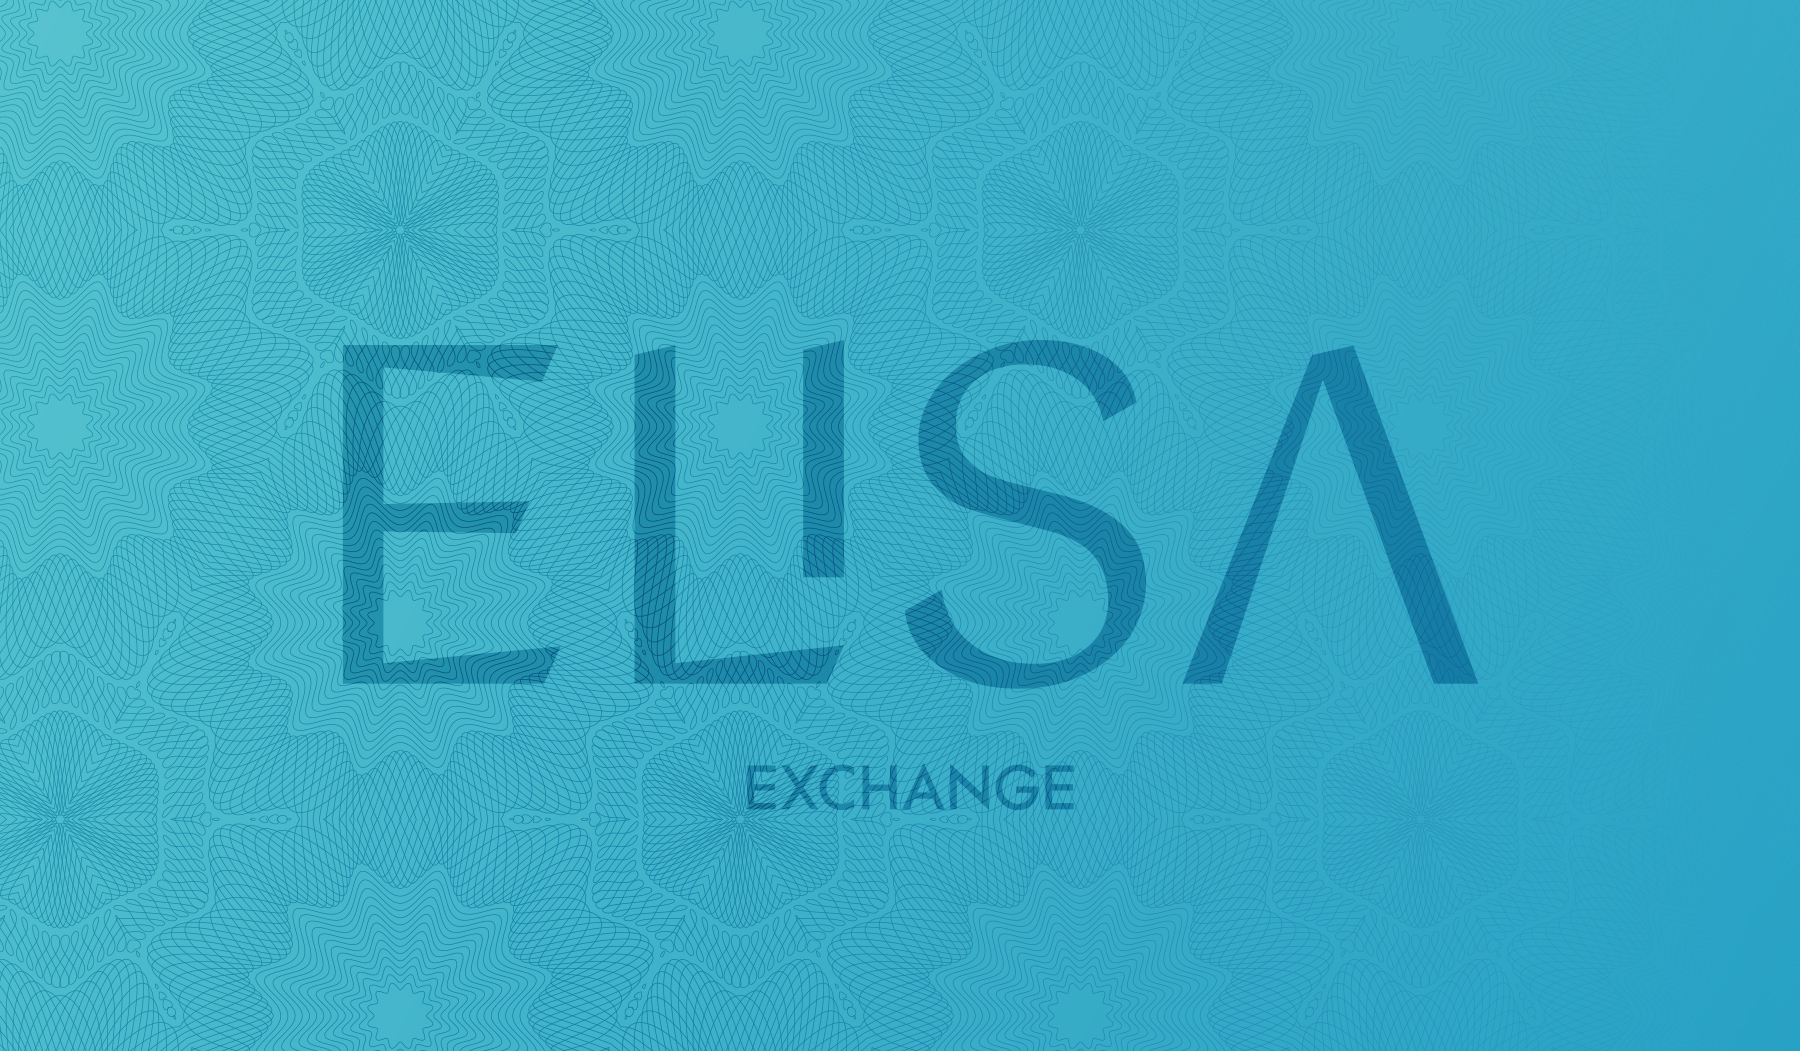 Elisa Exchange